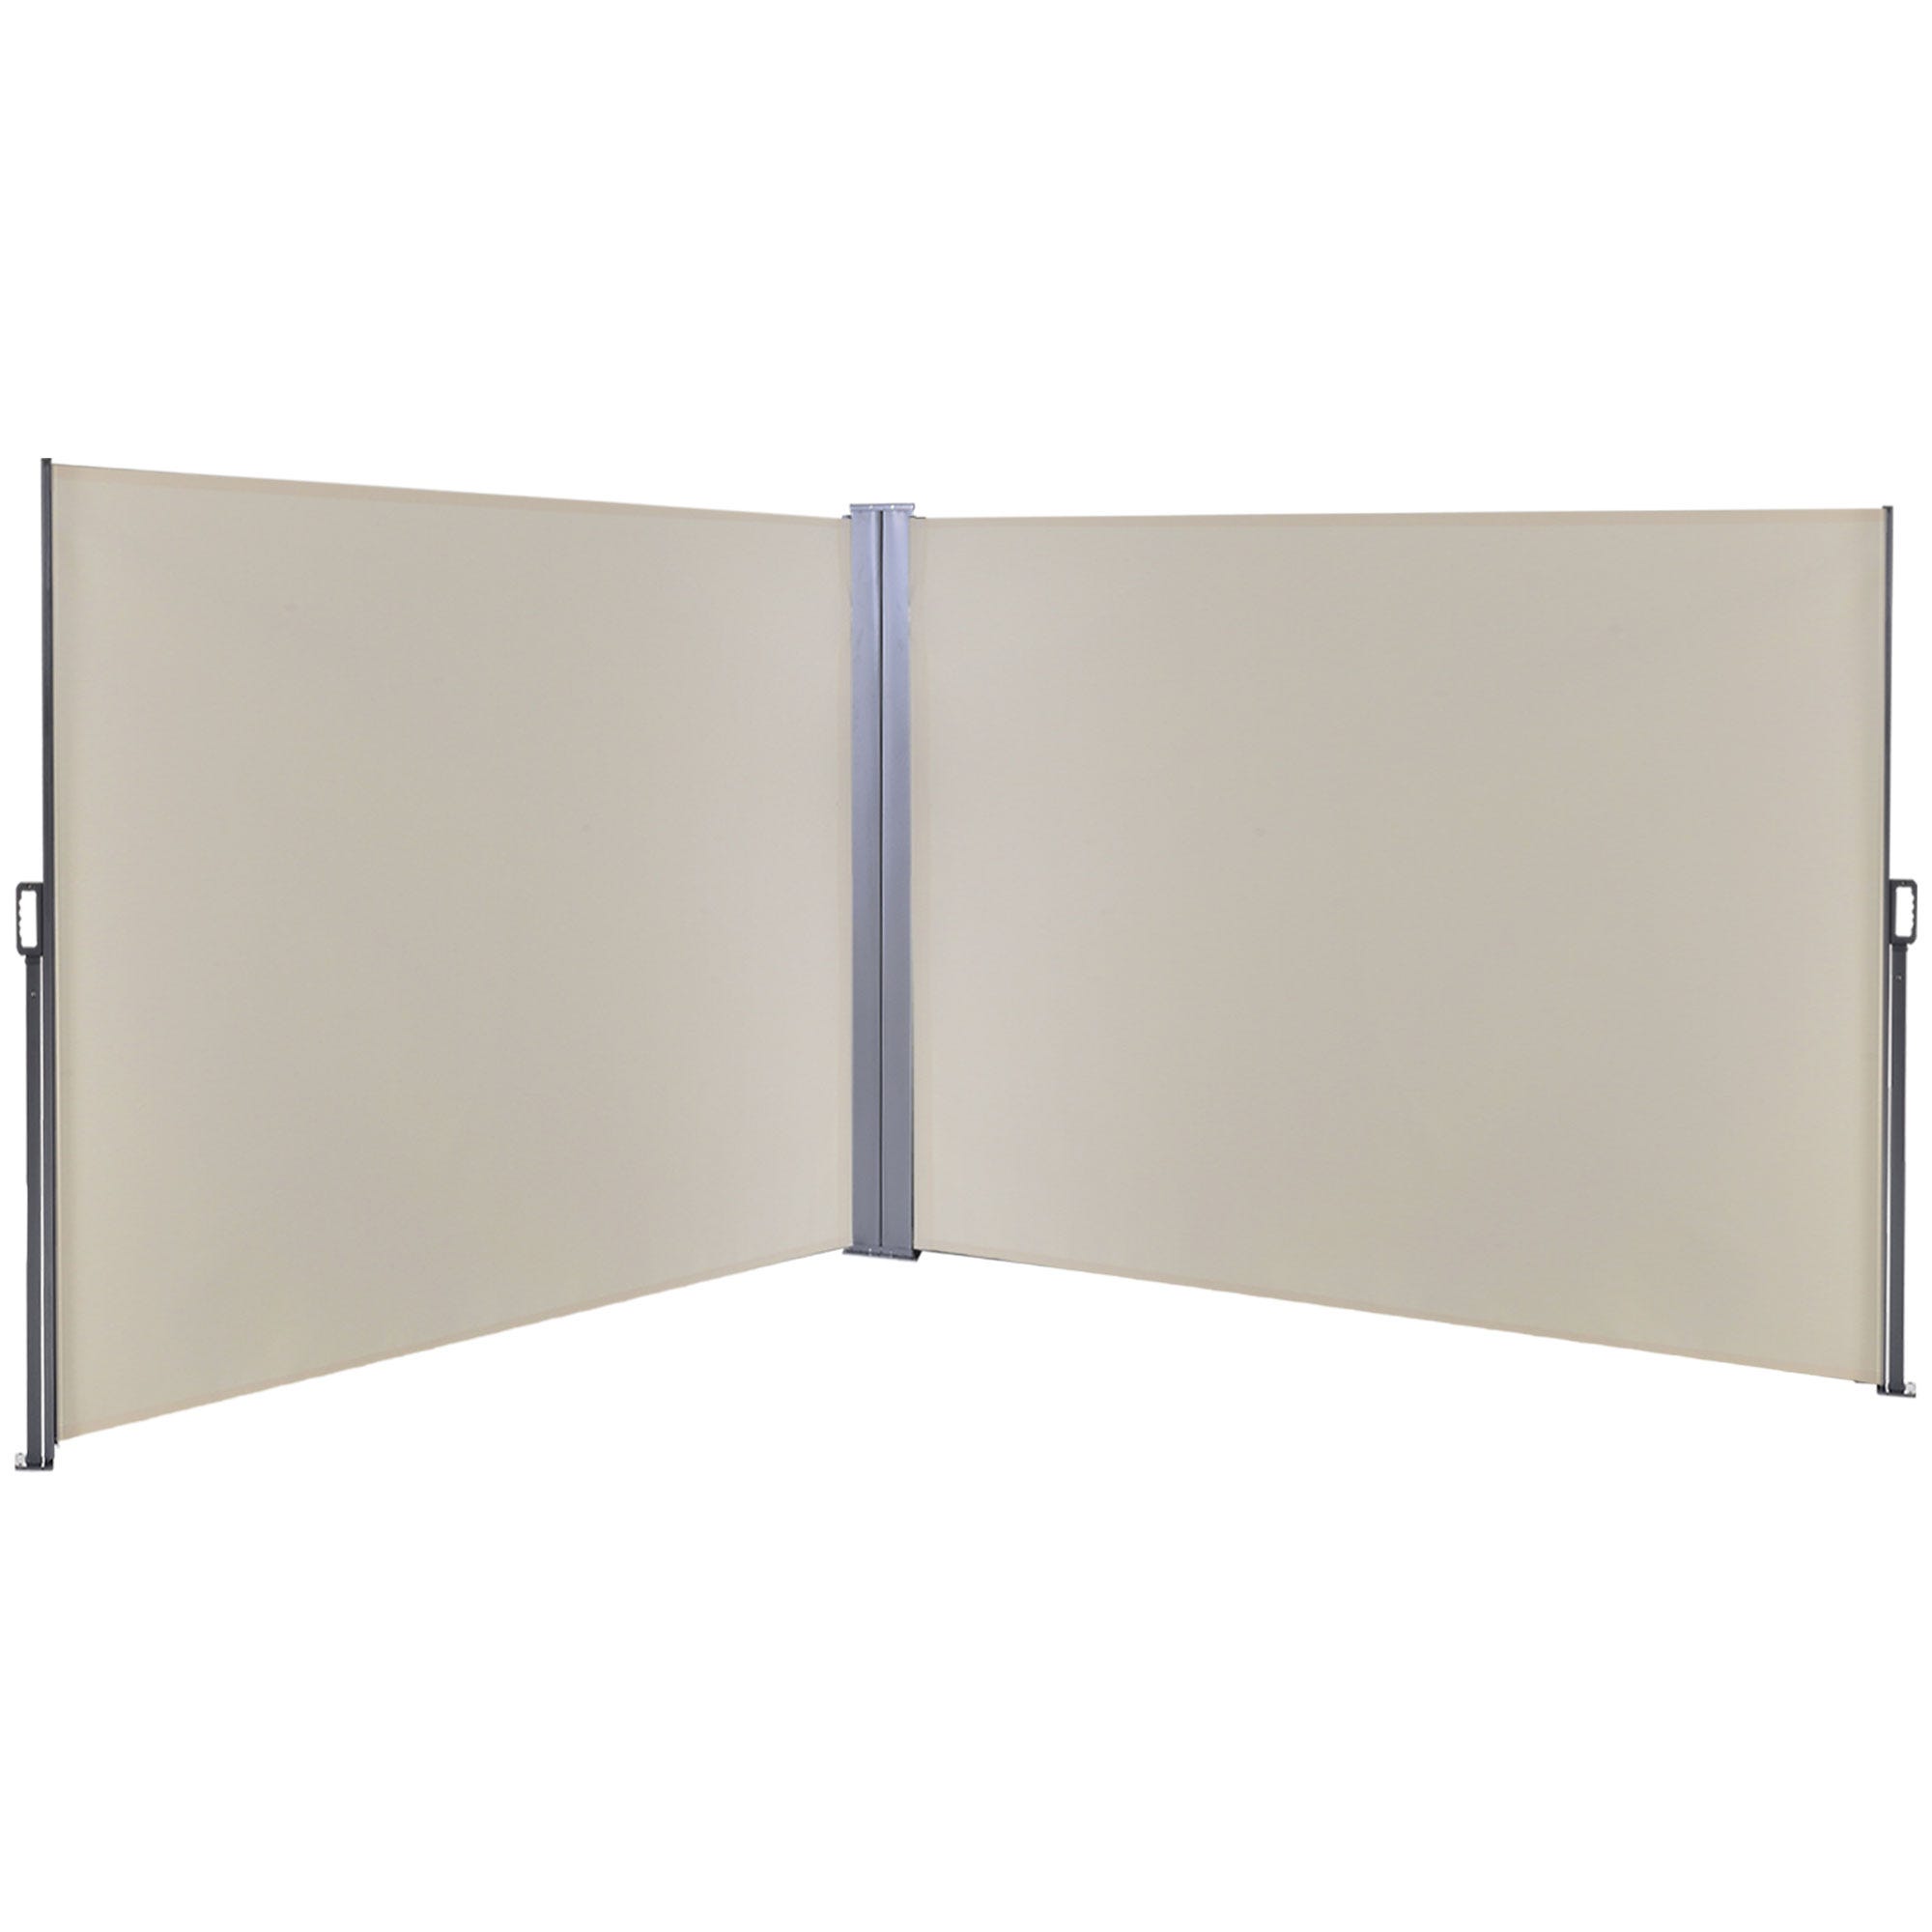  REKOOP Toldo lateral retráctil de 280 x 72 pulgadas, pantalla  lateral retráctil, pantalla divisora de privacidad con poliéster de 9.88  oz/m², impermeable y resistente a los rayos UV para patio, terraza